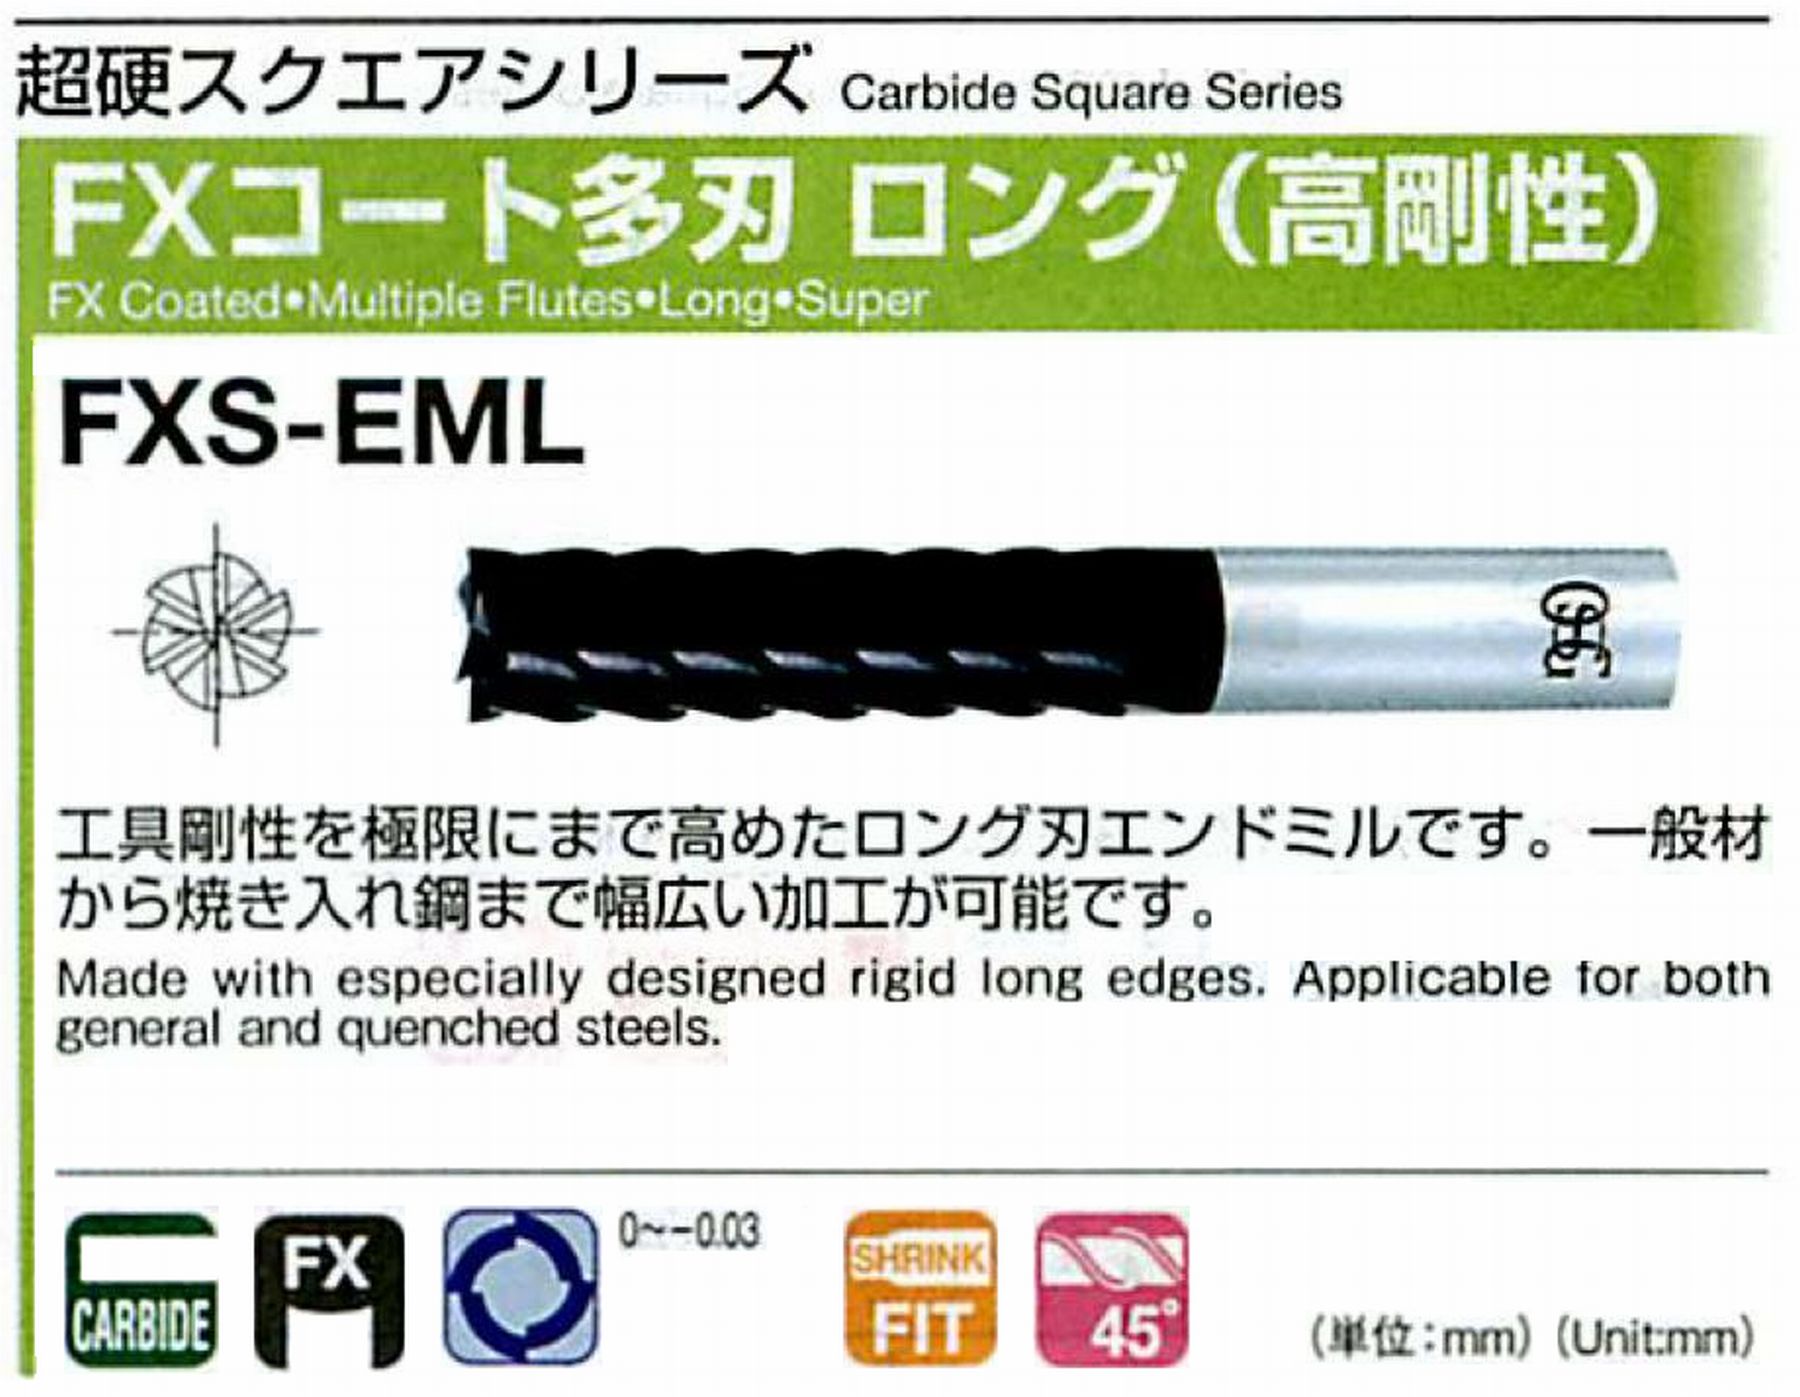 オーエスジー/OSG FXコート 多刃ロング(高剛性) FXS-EML 外径6 全長70 刃長25 シャンク径6mm 刃数6